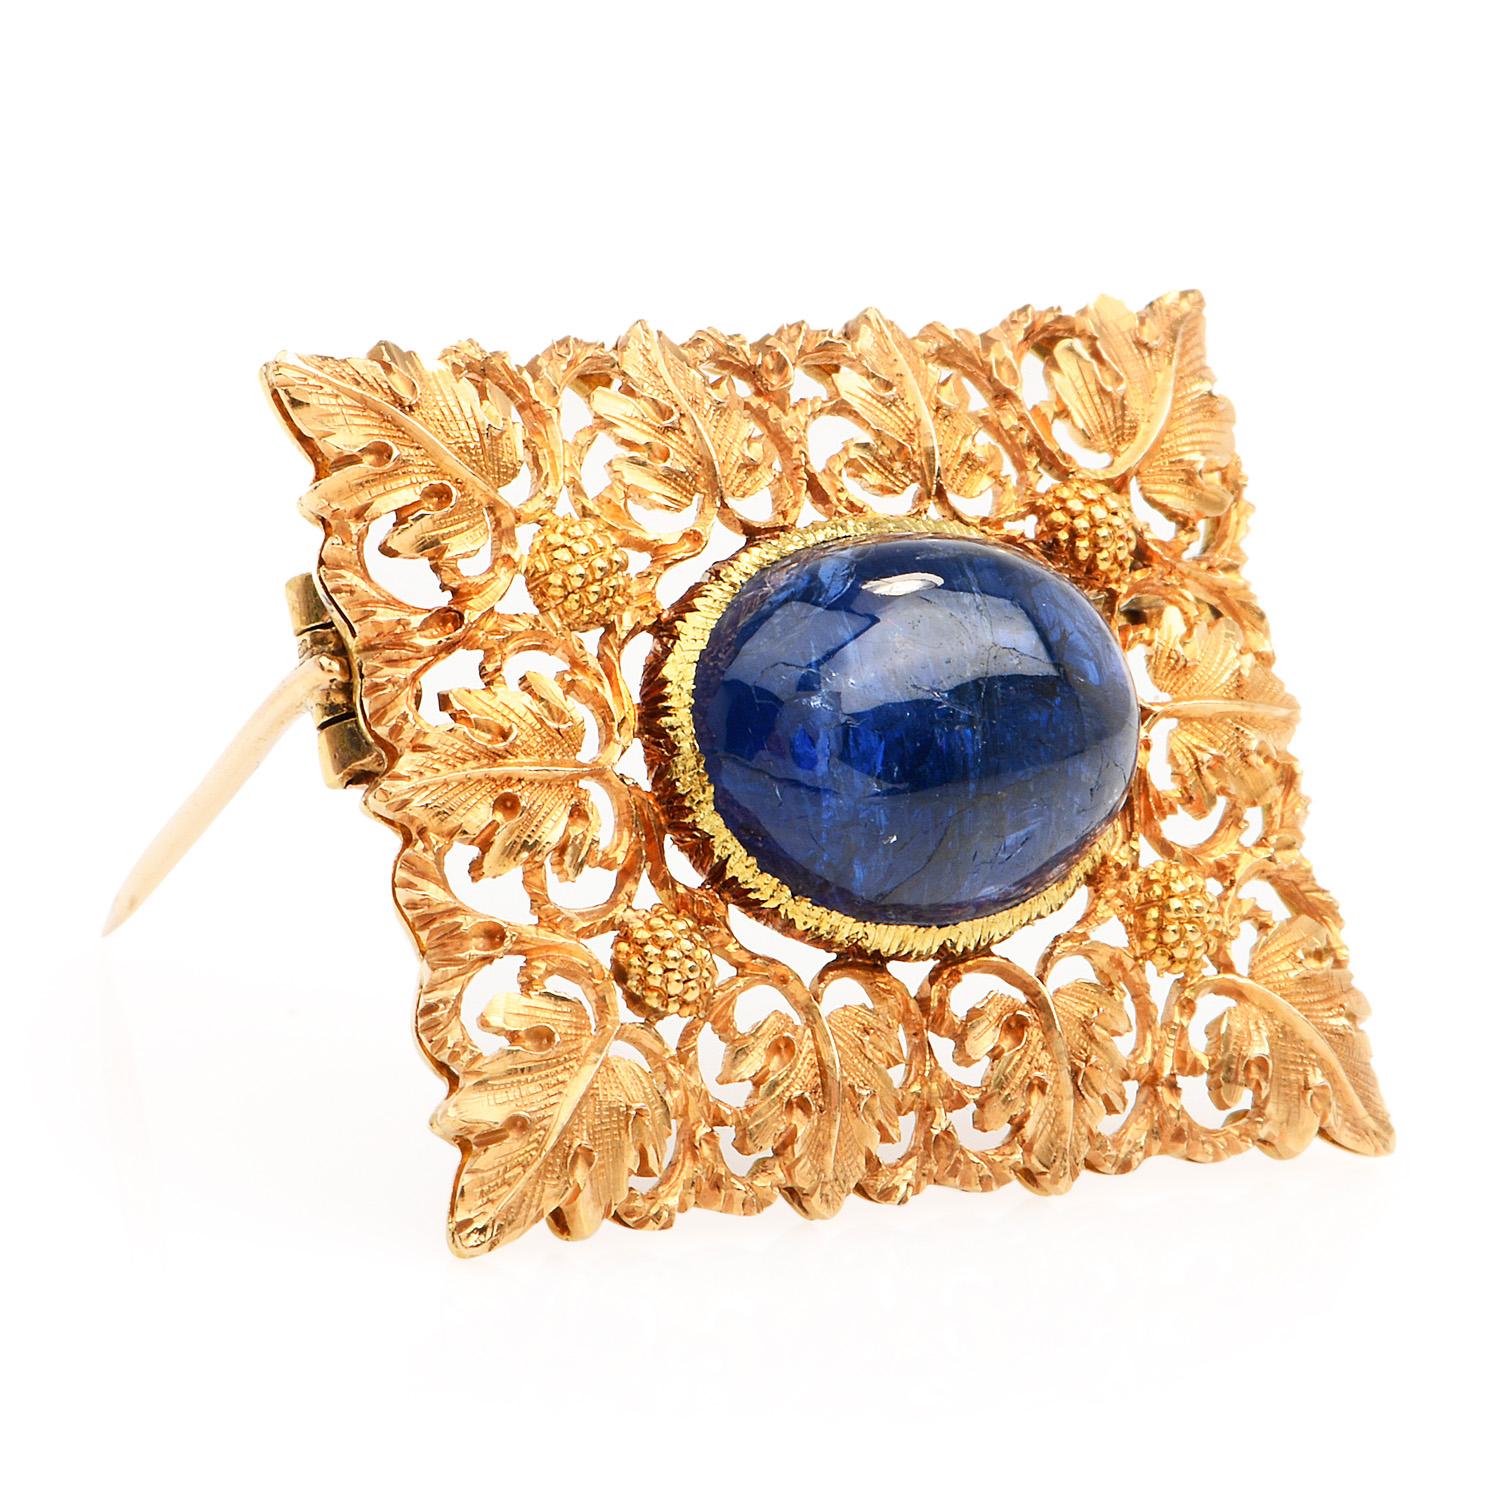 Diese außergewöhnliche rechteckige Vintage Buccellati Diamant und Saphir Brosche.

Dieses Stück wurde in luxuriösem 18K Gelbgold gefertigt.

Diese Brosche misst ca. 33 mm x 25 mm und ist

verfügt über 1 natürlichen No Heat Cabochon Blue Sapphire in